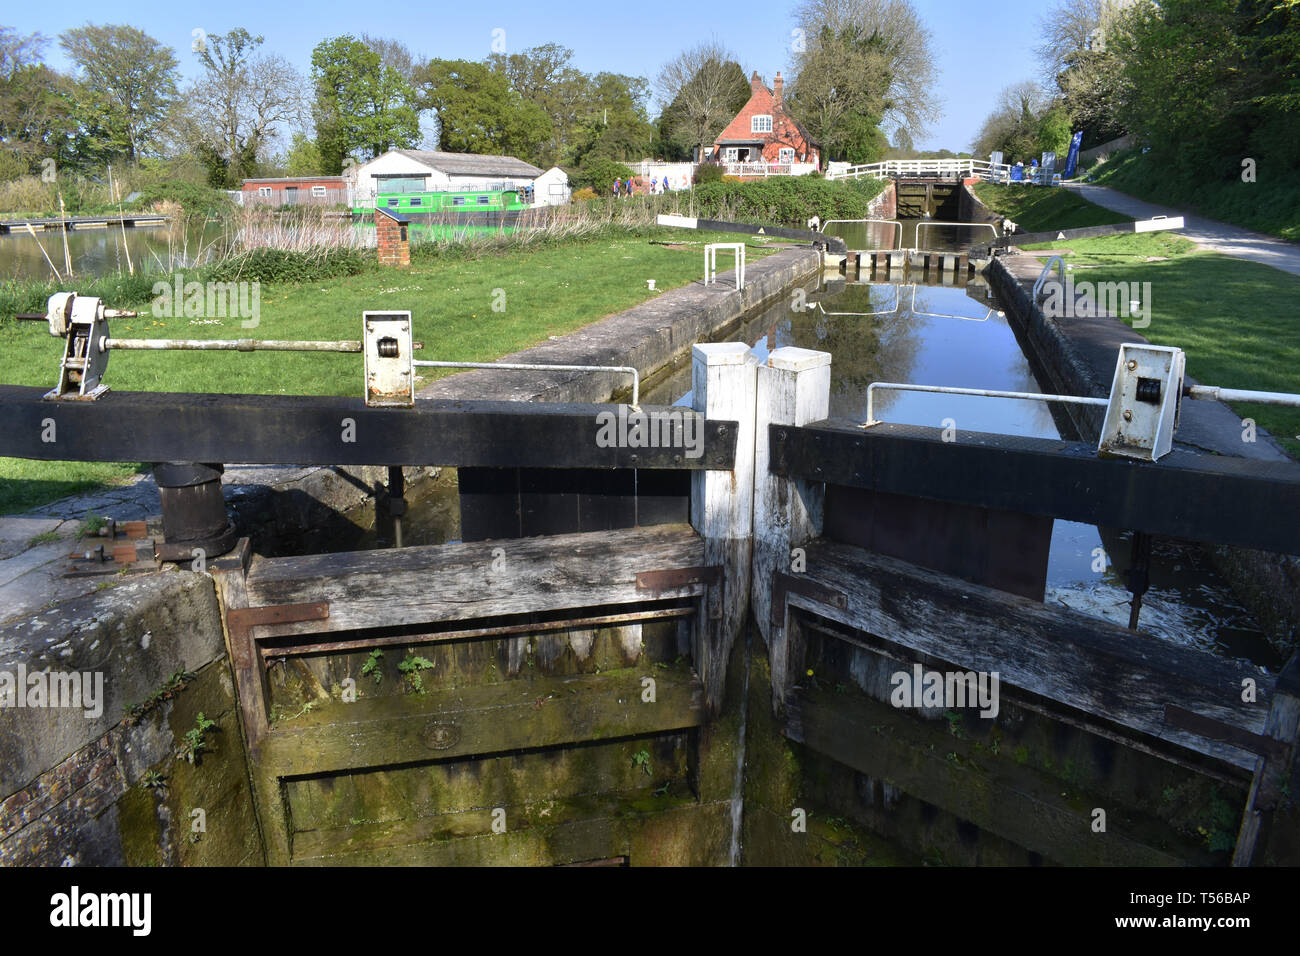 Vuelo de esclusas en el canal de kennet y Avon en Caen Hill, Devizes Foto de stock